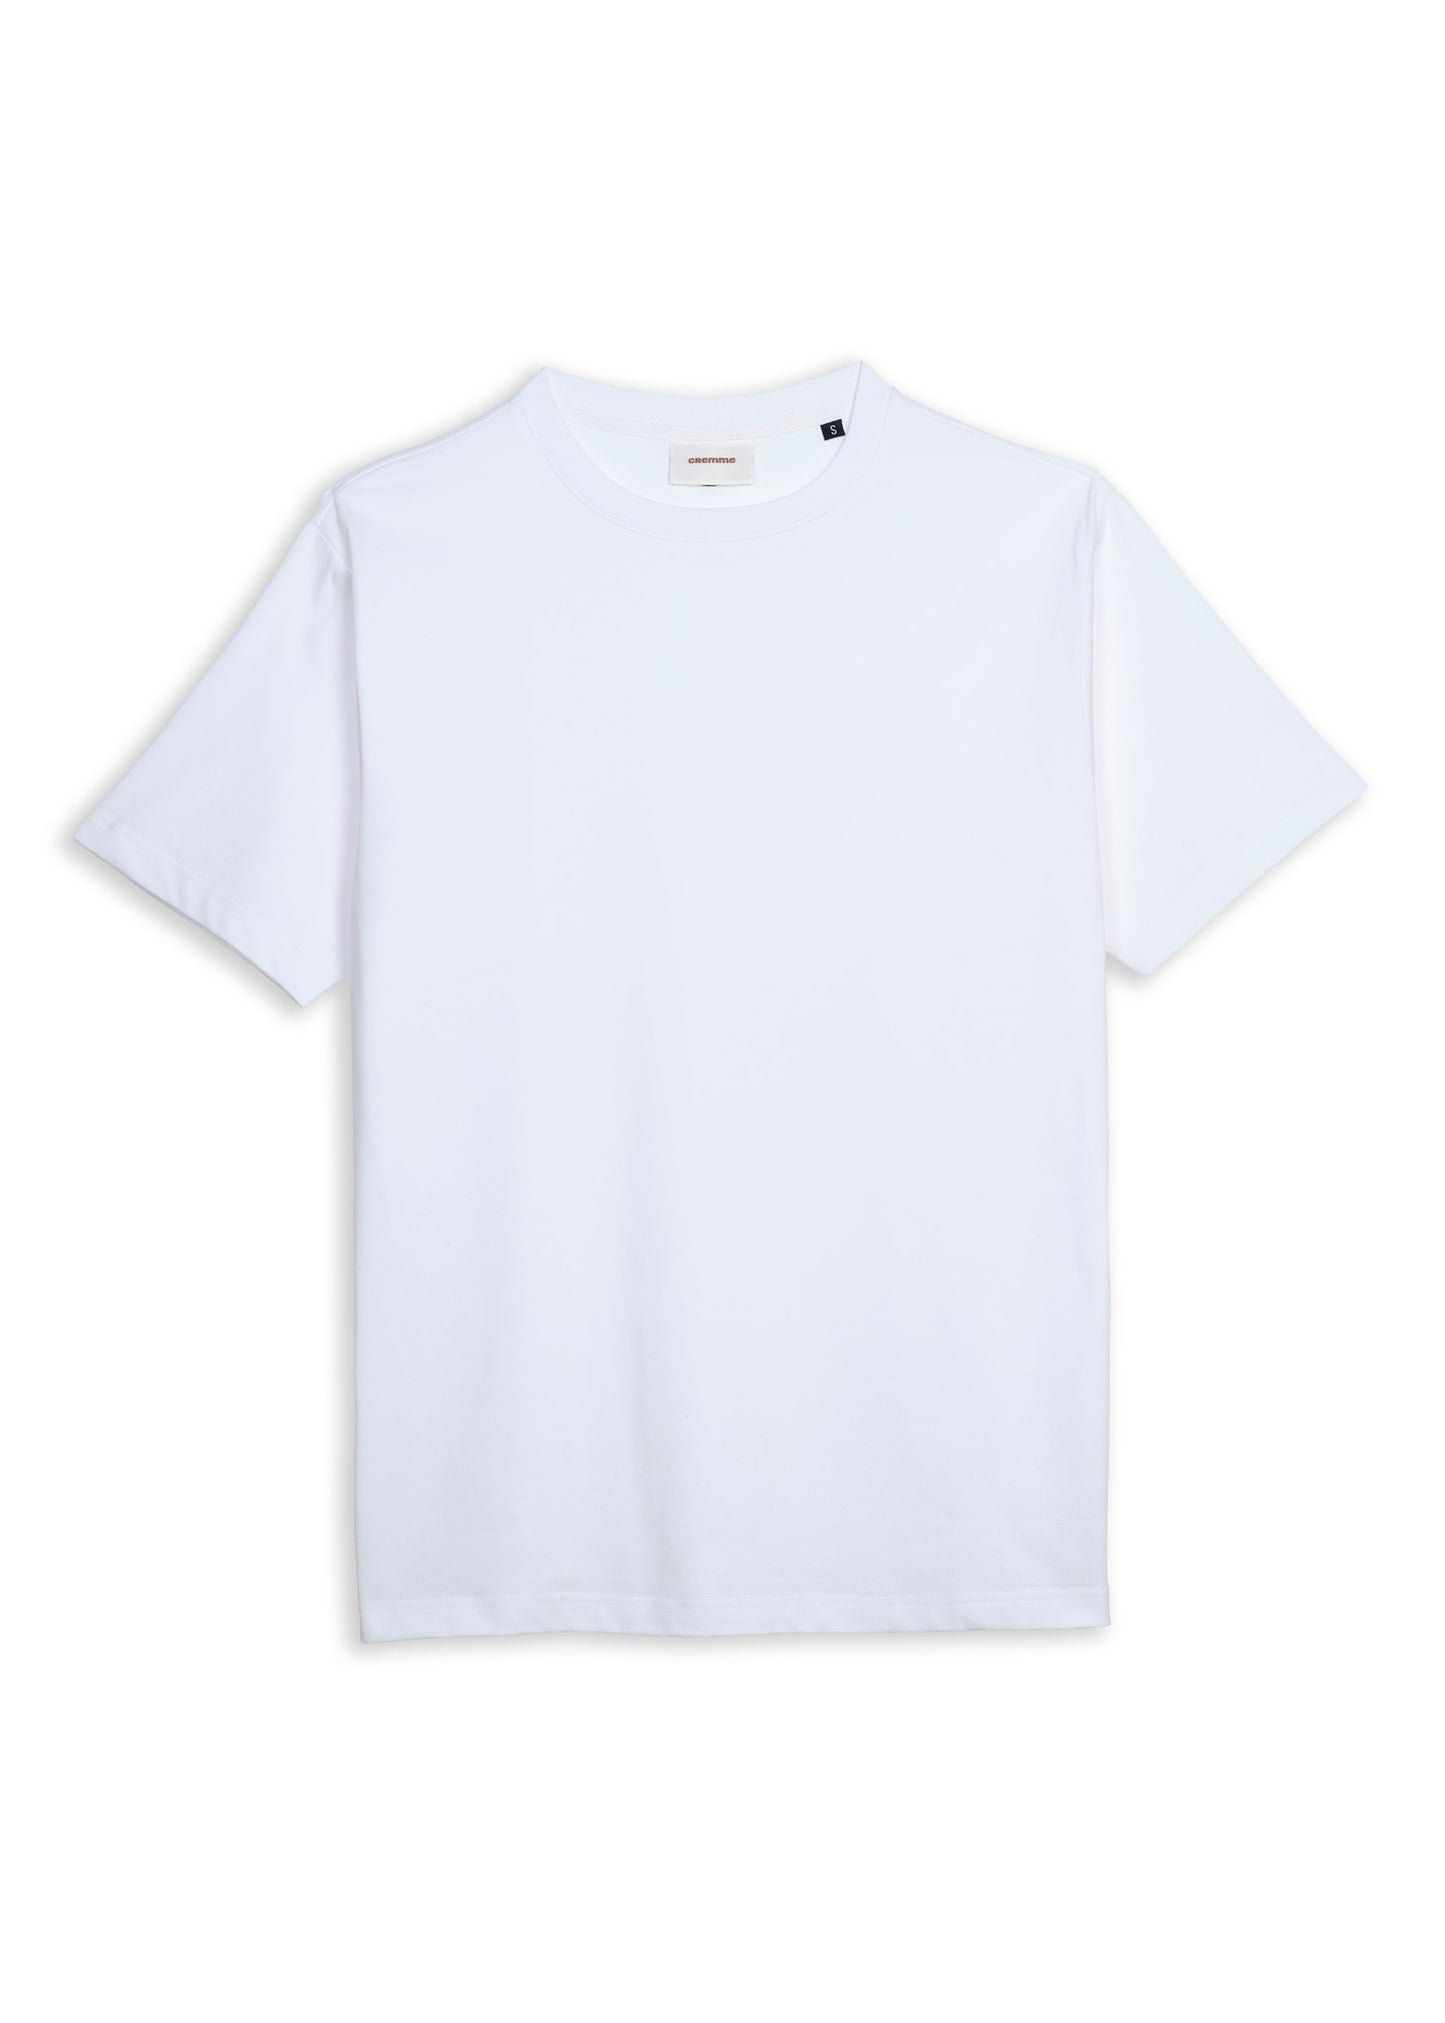 Classic T-Shirt V2 - White